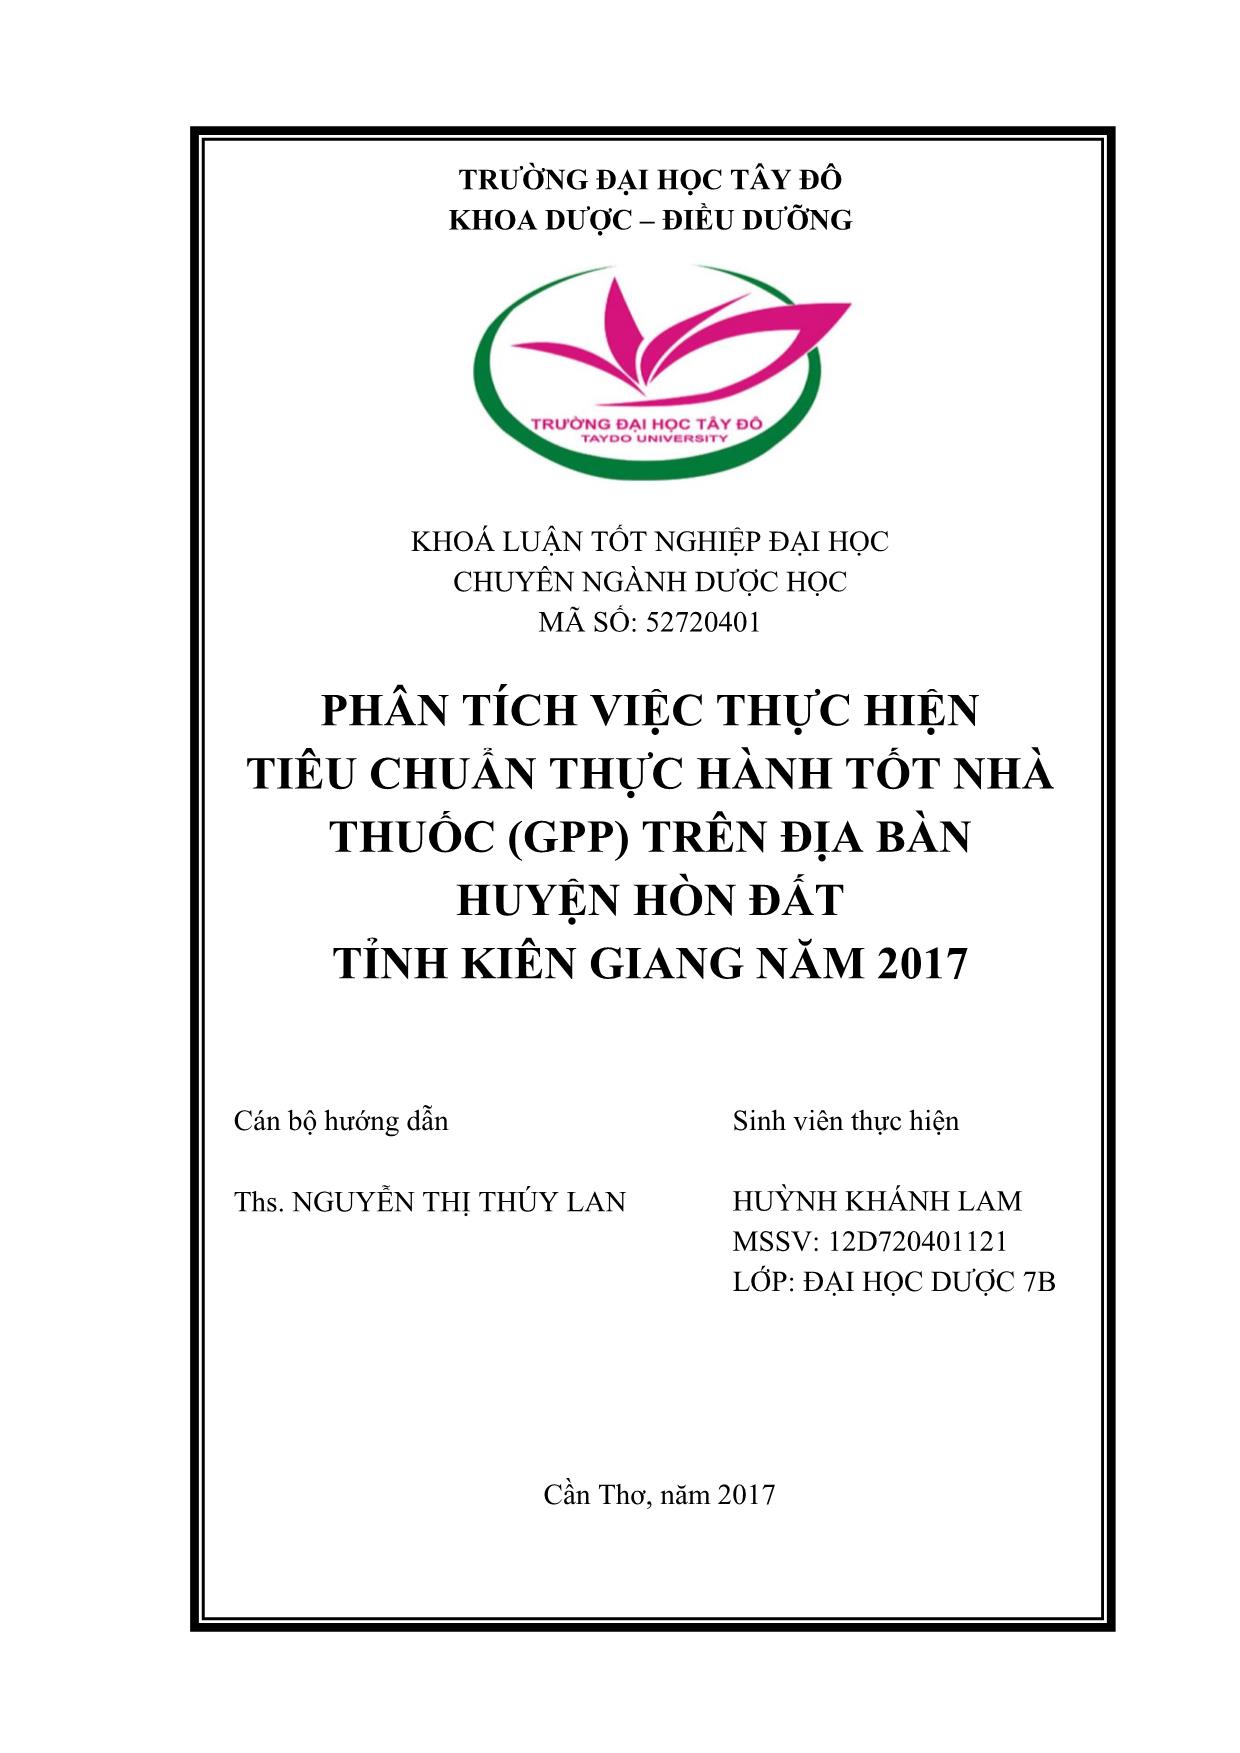 Phân tích việc thực hiện tiêu chuẩn thực hành tốt nhà thuốc (gpp) trên địa bàn huyện Hòn Đất tỉnh Kiên giang năm 2017 trang 1